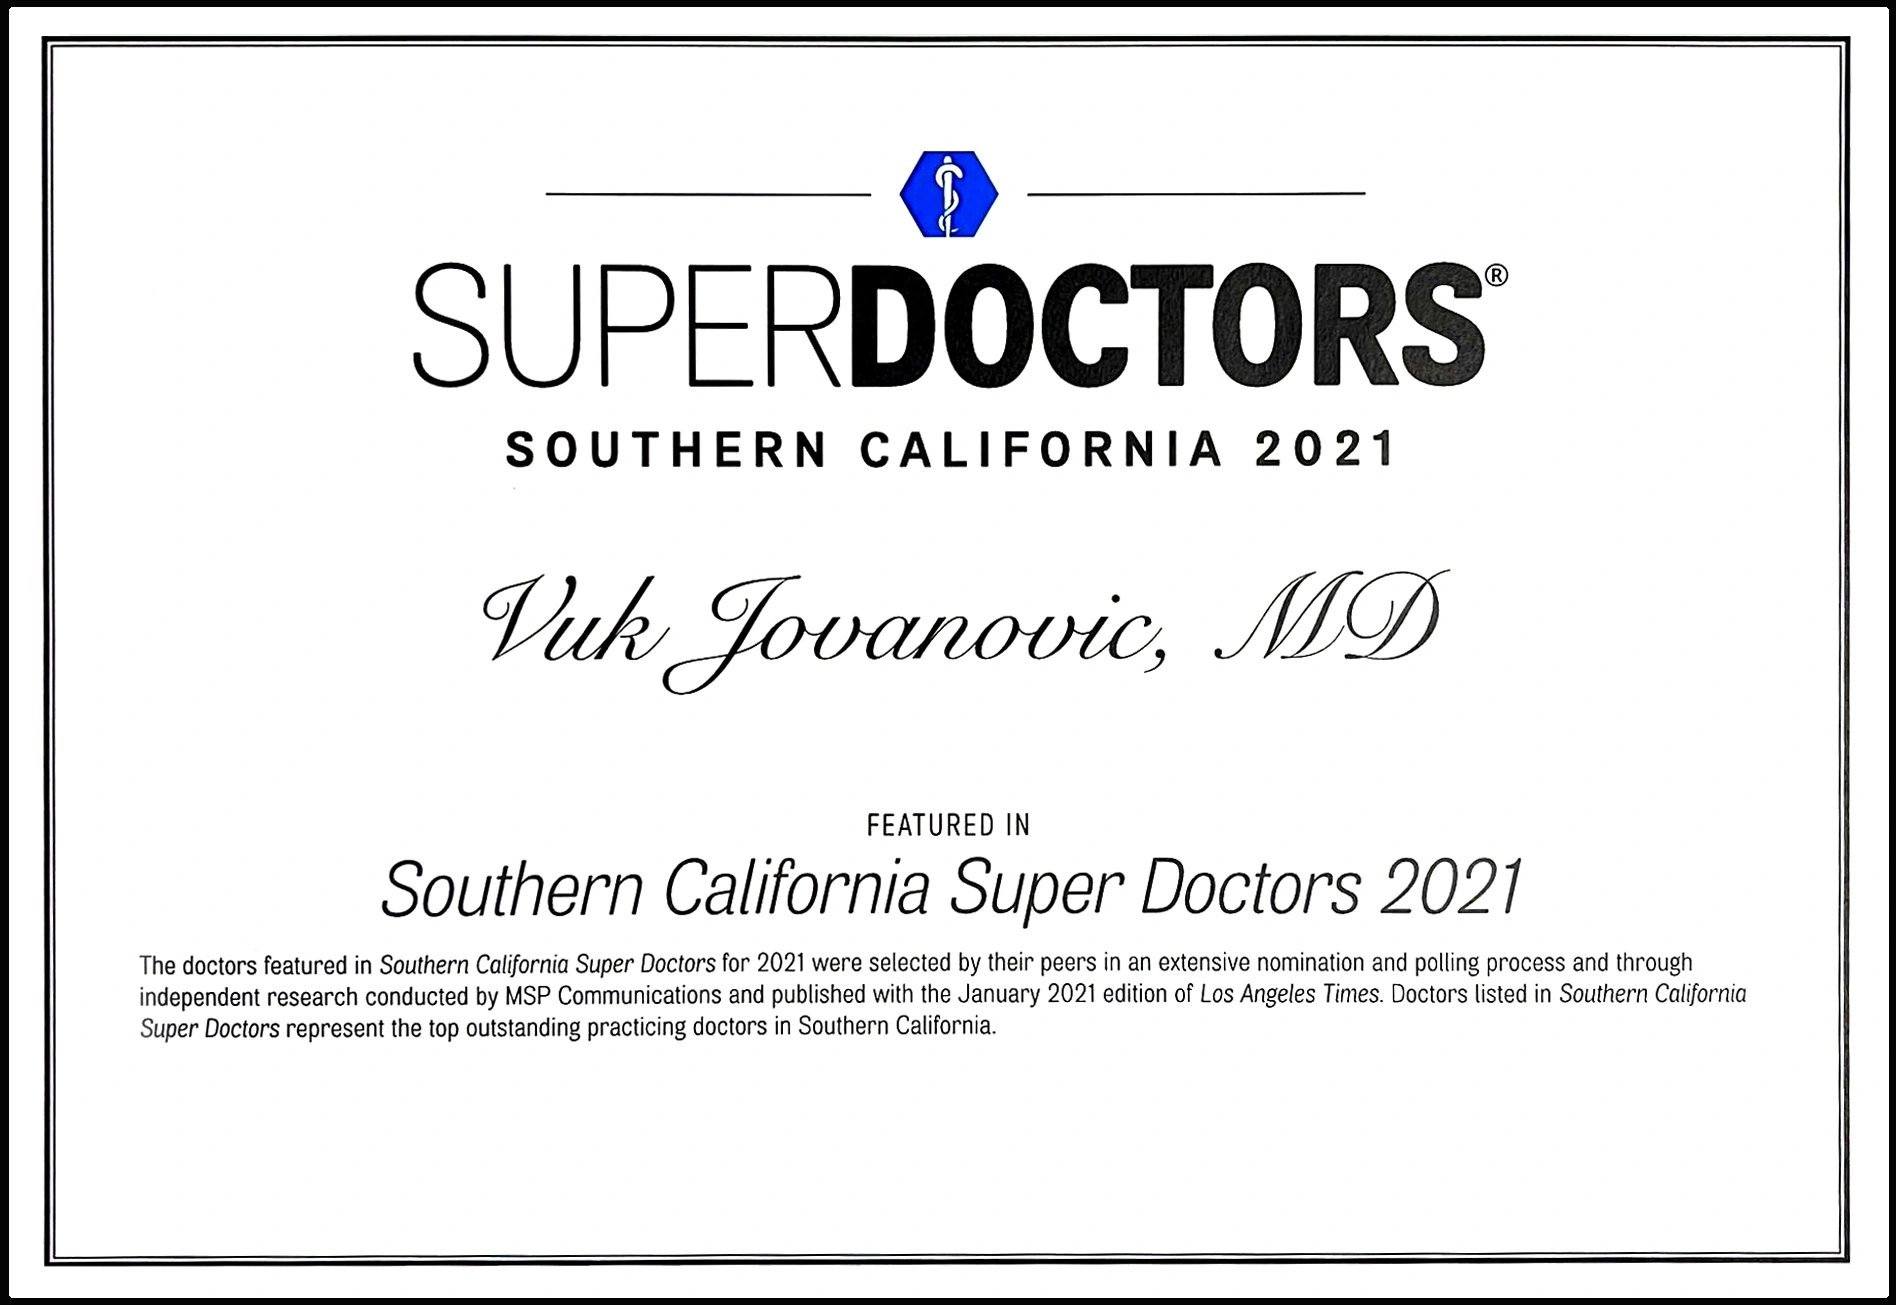 Jovanovic醫生2021年被評為南加州超級醫生